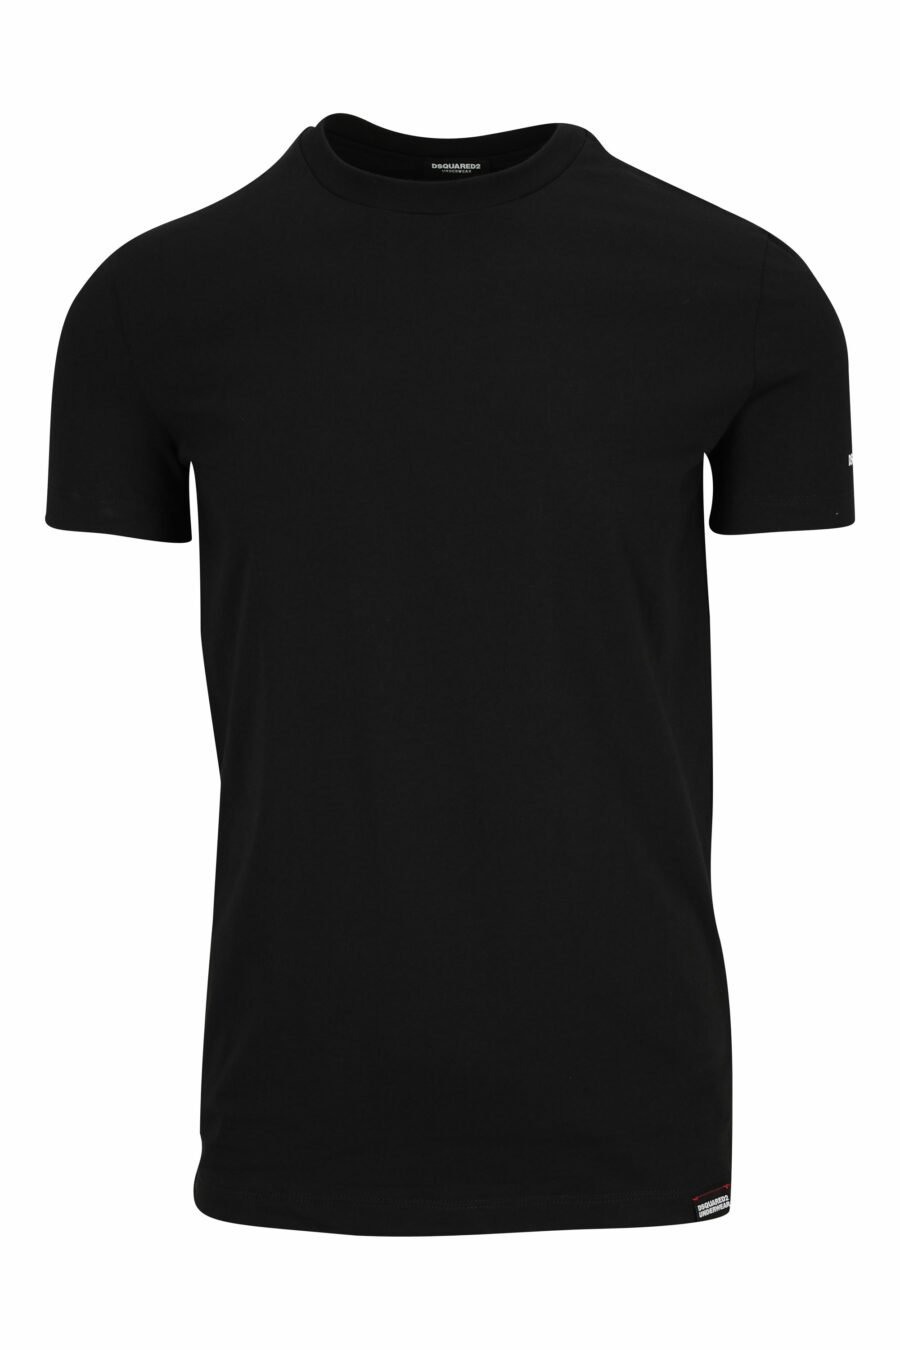 Schwarzes T-shirt mit weißer Unterwäsche minilogue - 8032674811509